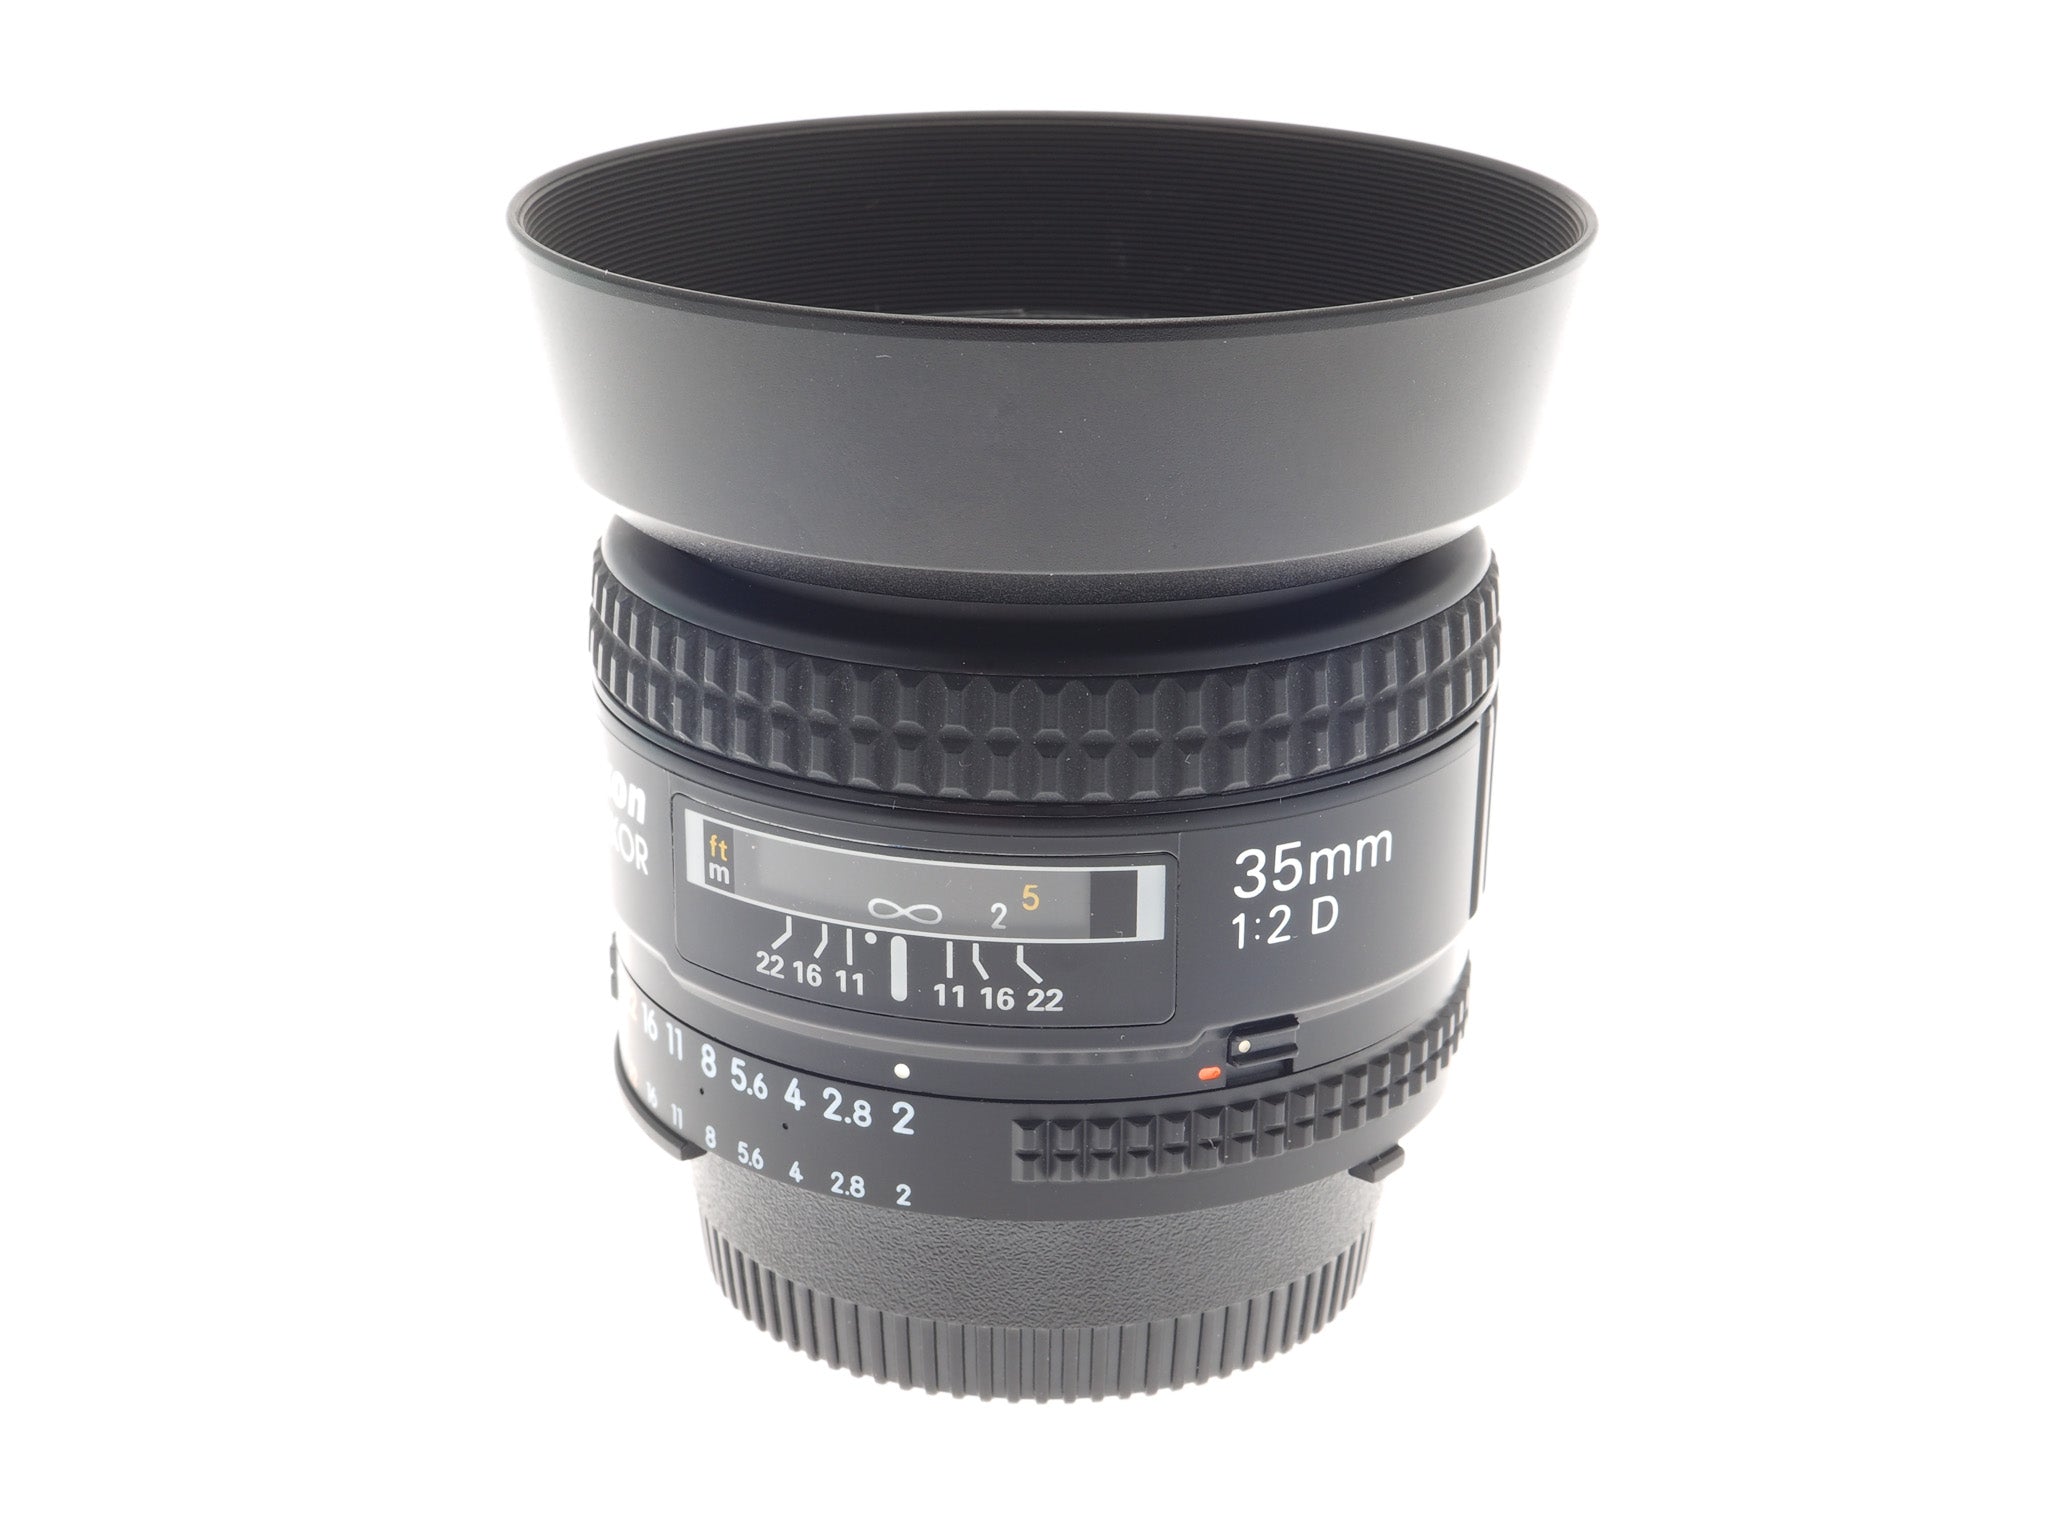 Nikon 35mm f2 D AF Nikkor - Lens